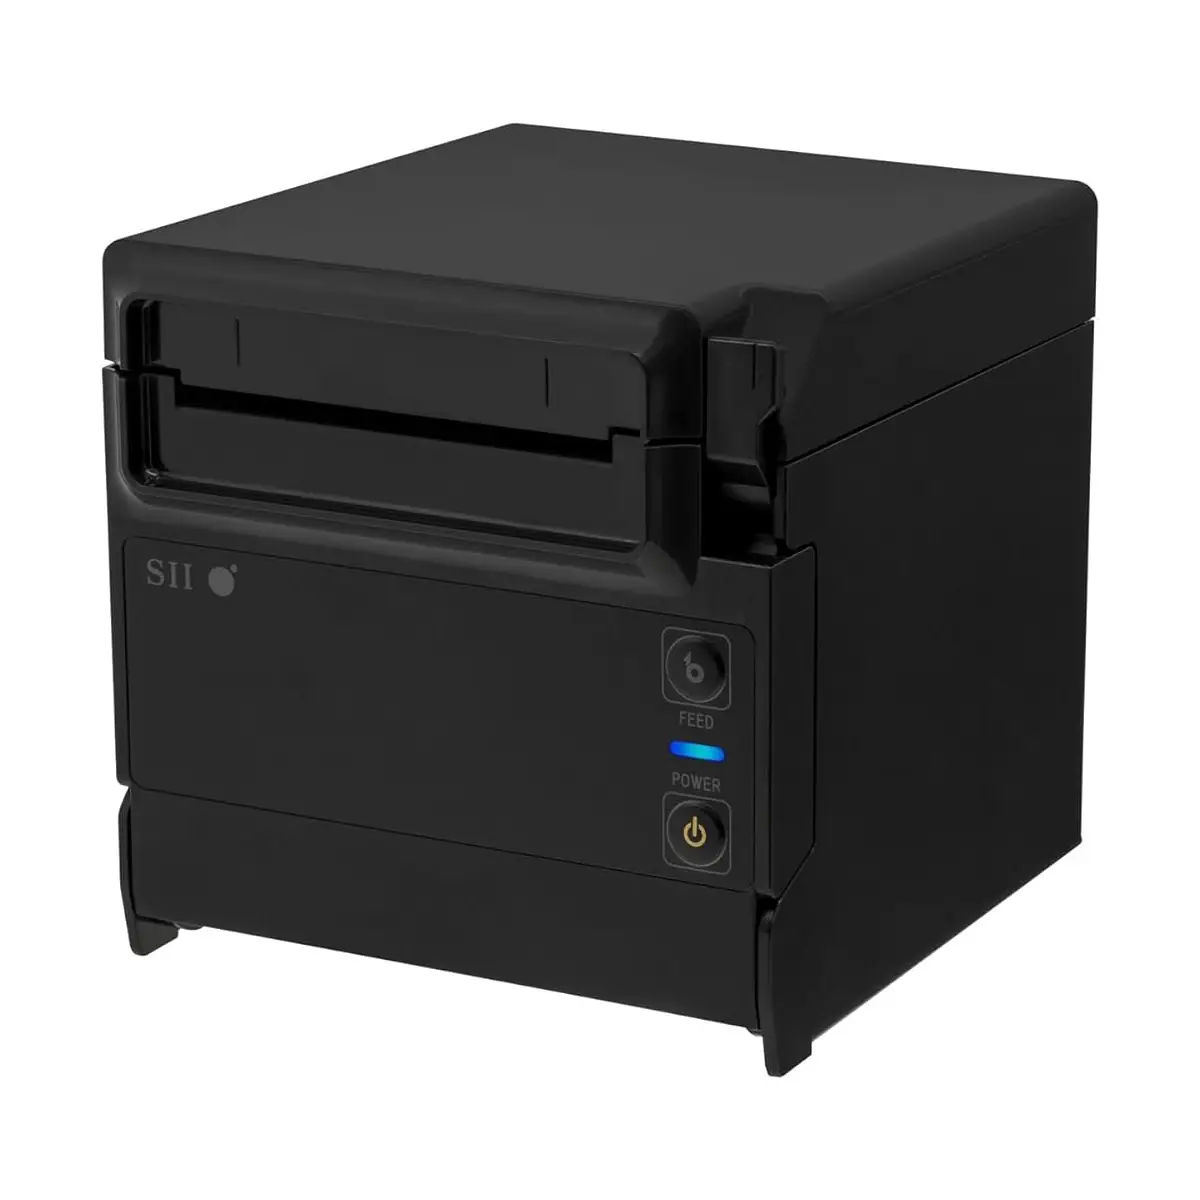 Seiko RP-F10 Thermal Receipt Printer Black Front